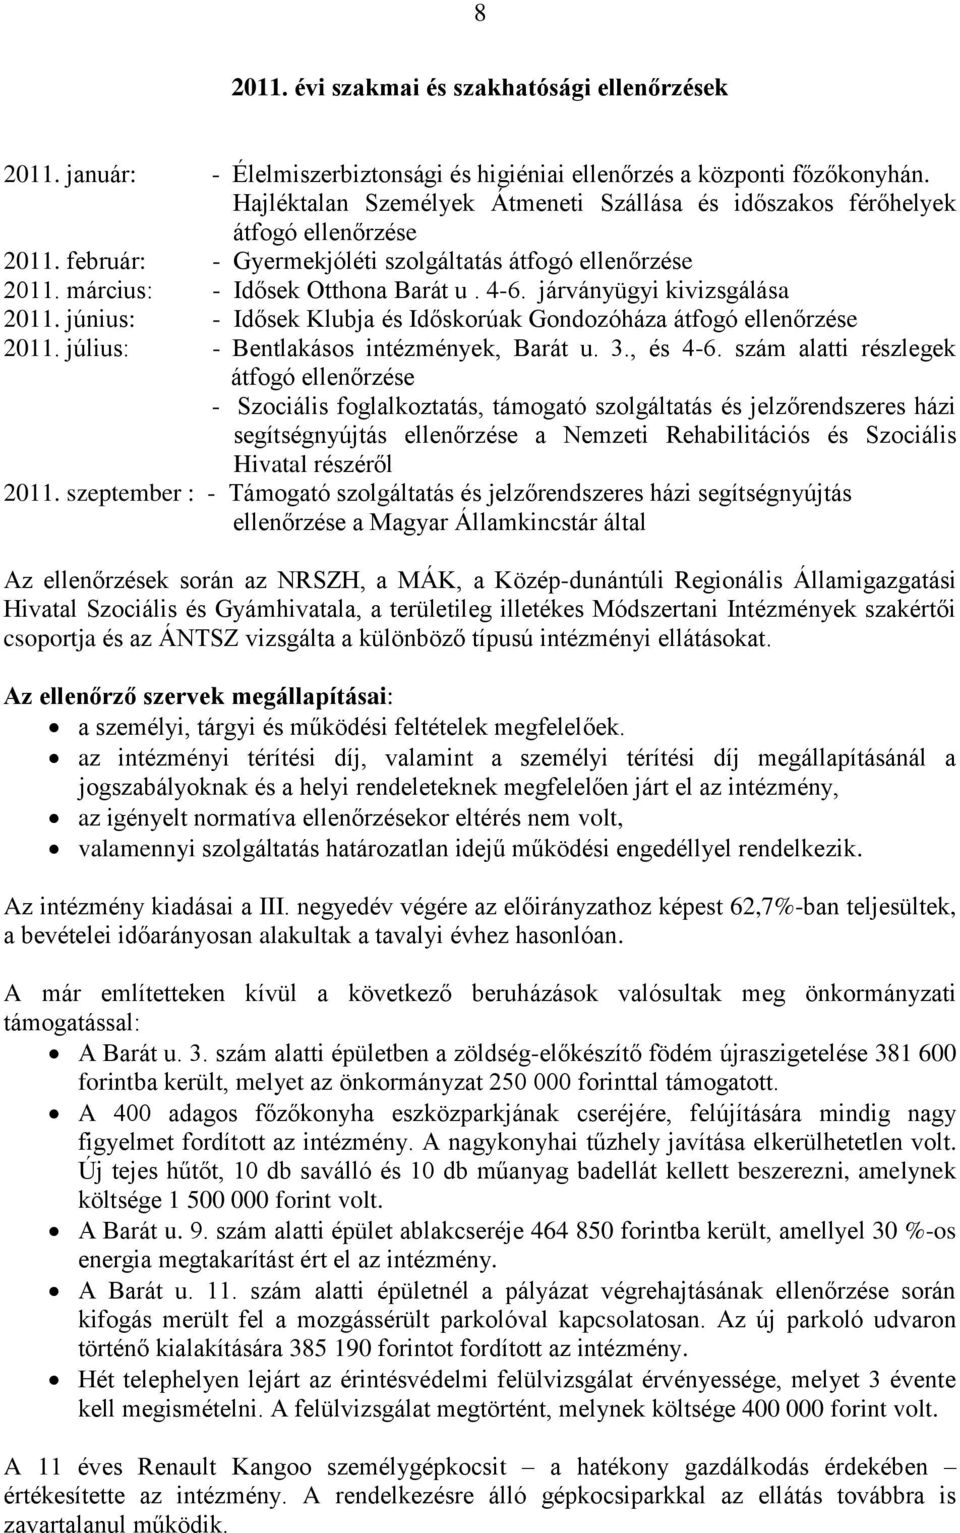 járványügyi kivizsgálása 2011. június: - Idősek Klubja és Időskorúak Gondozóháza átfogó ellenőrzése 2011. július: - Bentlakásos intézmények, Barát u. 3., és 4-6.